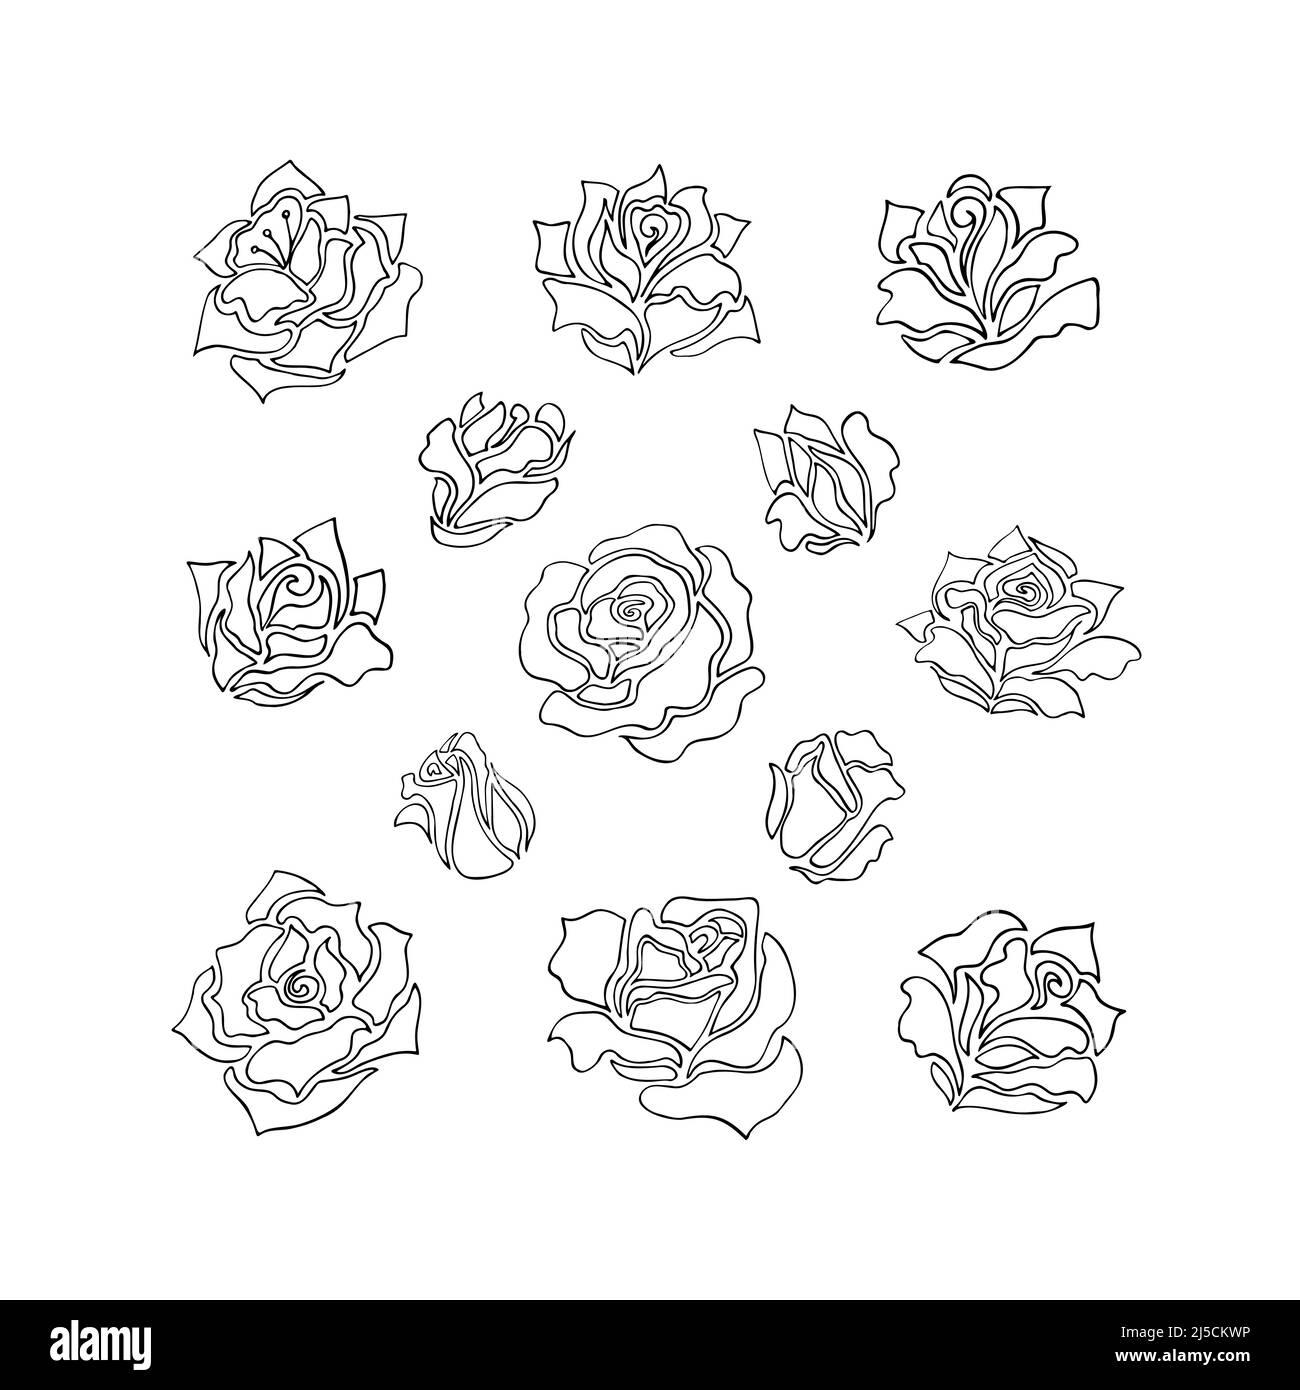 Ilustraciones de flores de rosas y brotes. Colección de elementos florales con un estilo original de líneas bosquejadas Ilustración del Vector